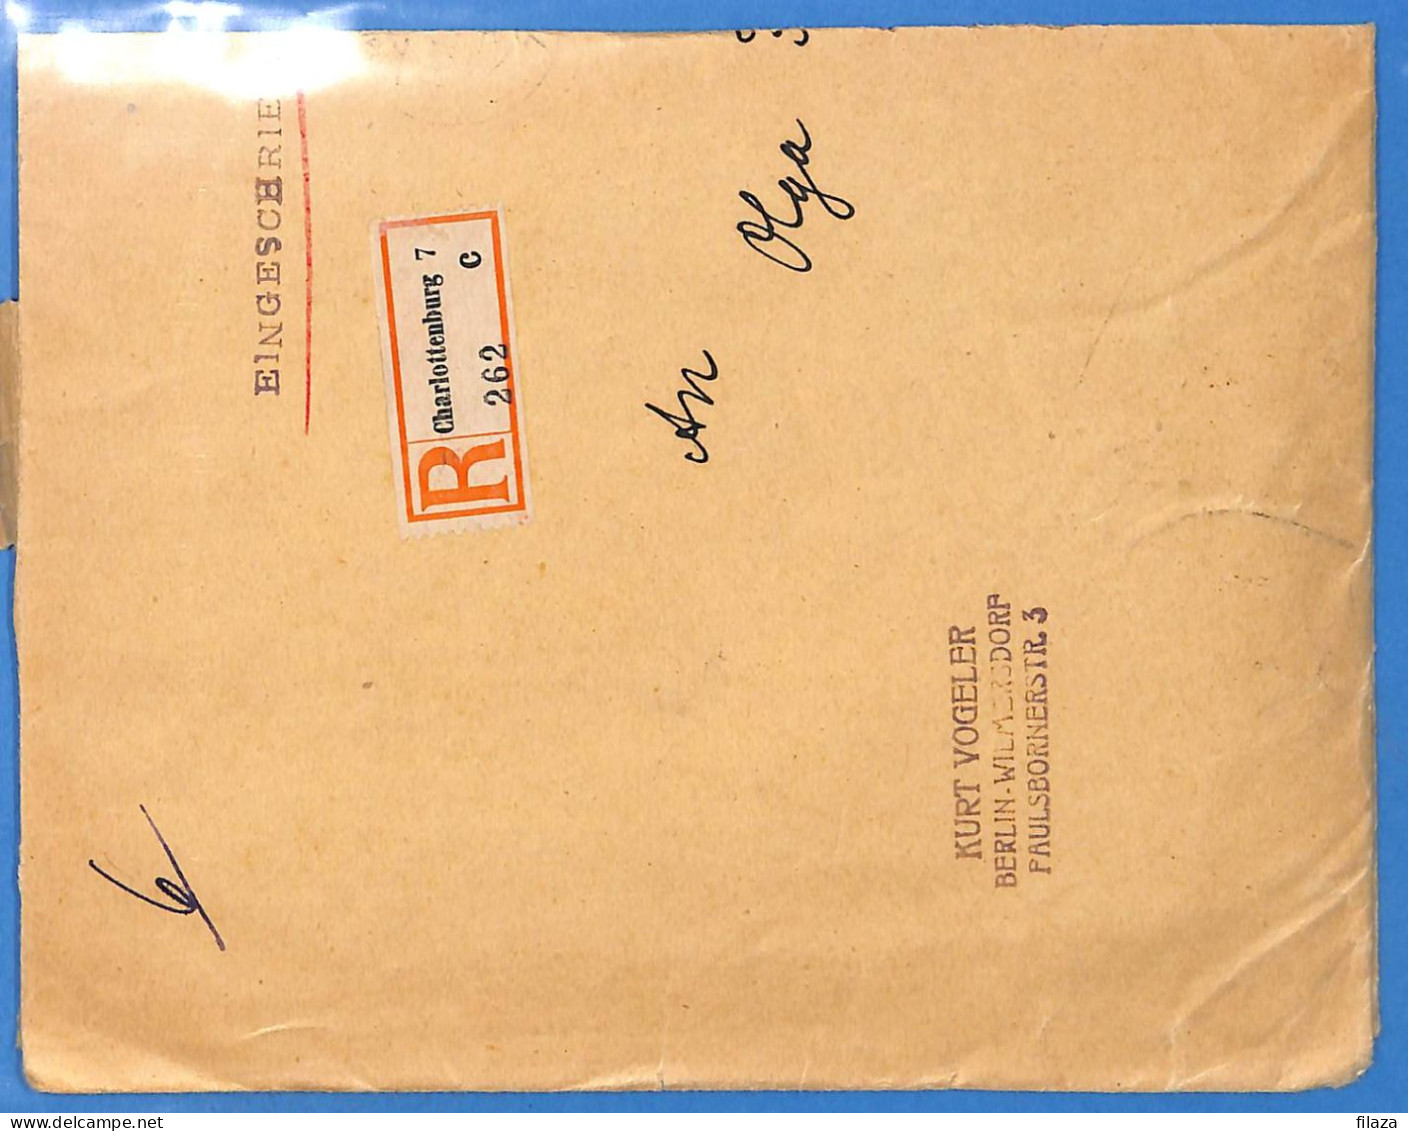 Allemagne Reich 1920 - Lettre Einschreiben De Berlin - G33350 - Storia Postale